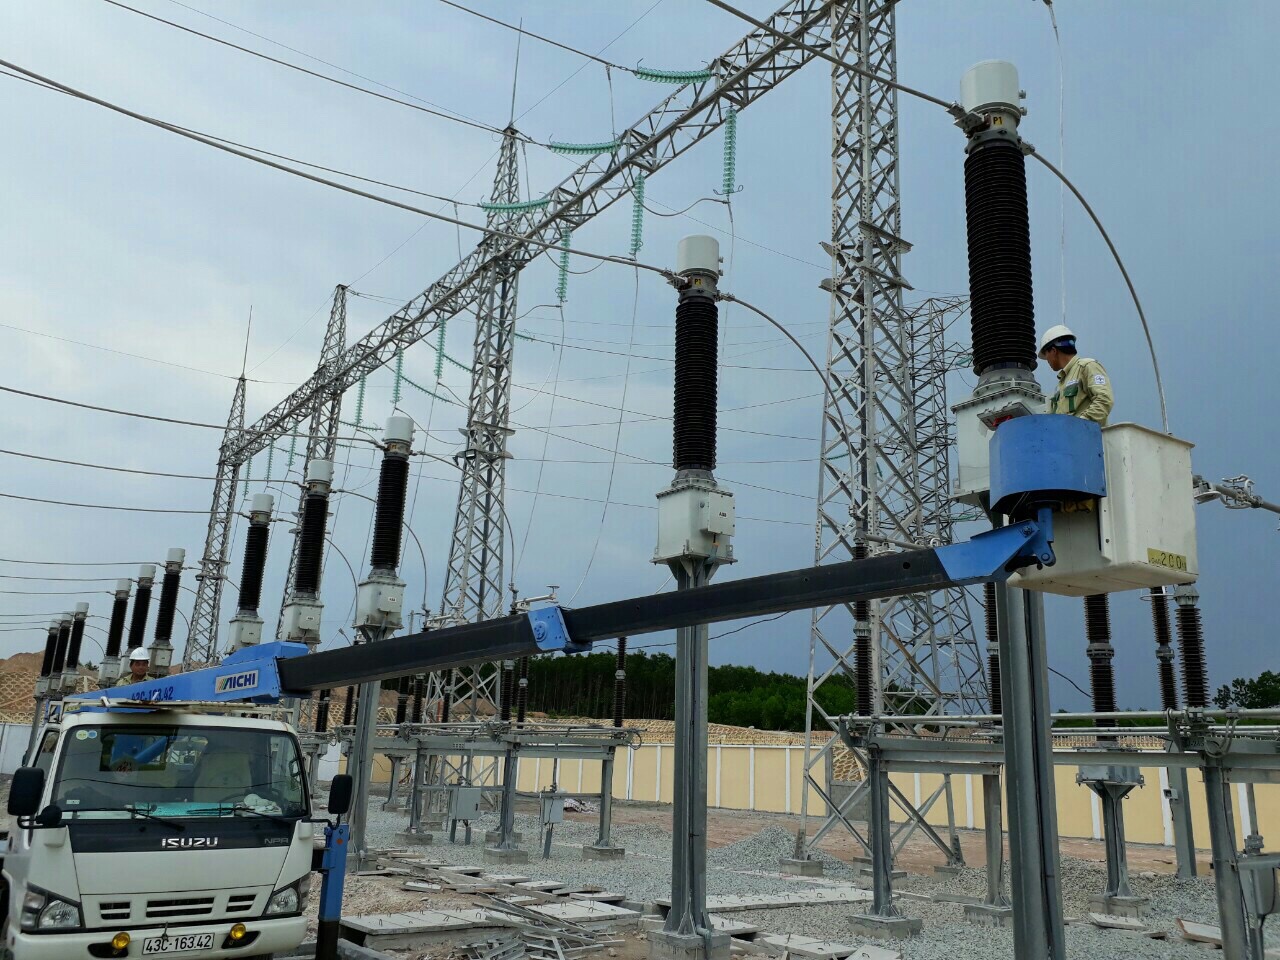 Trung tâm Dịch vụ kỹ thuật 2 chủ động triển khai công tác sửa chữa, thí nghiệm để đảm bảo cấp điện ổn định trong mùa khô 2018